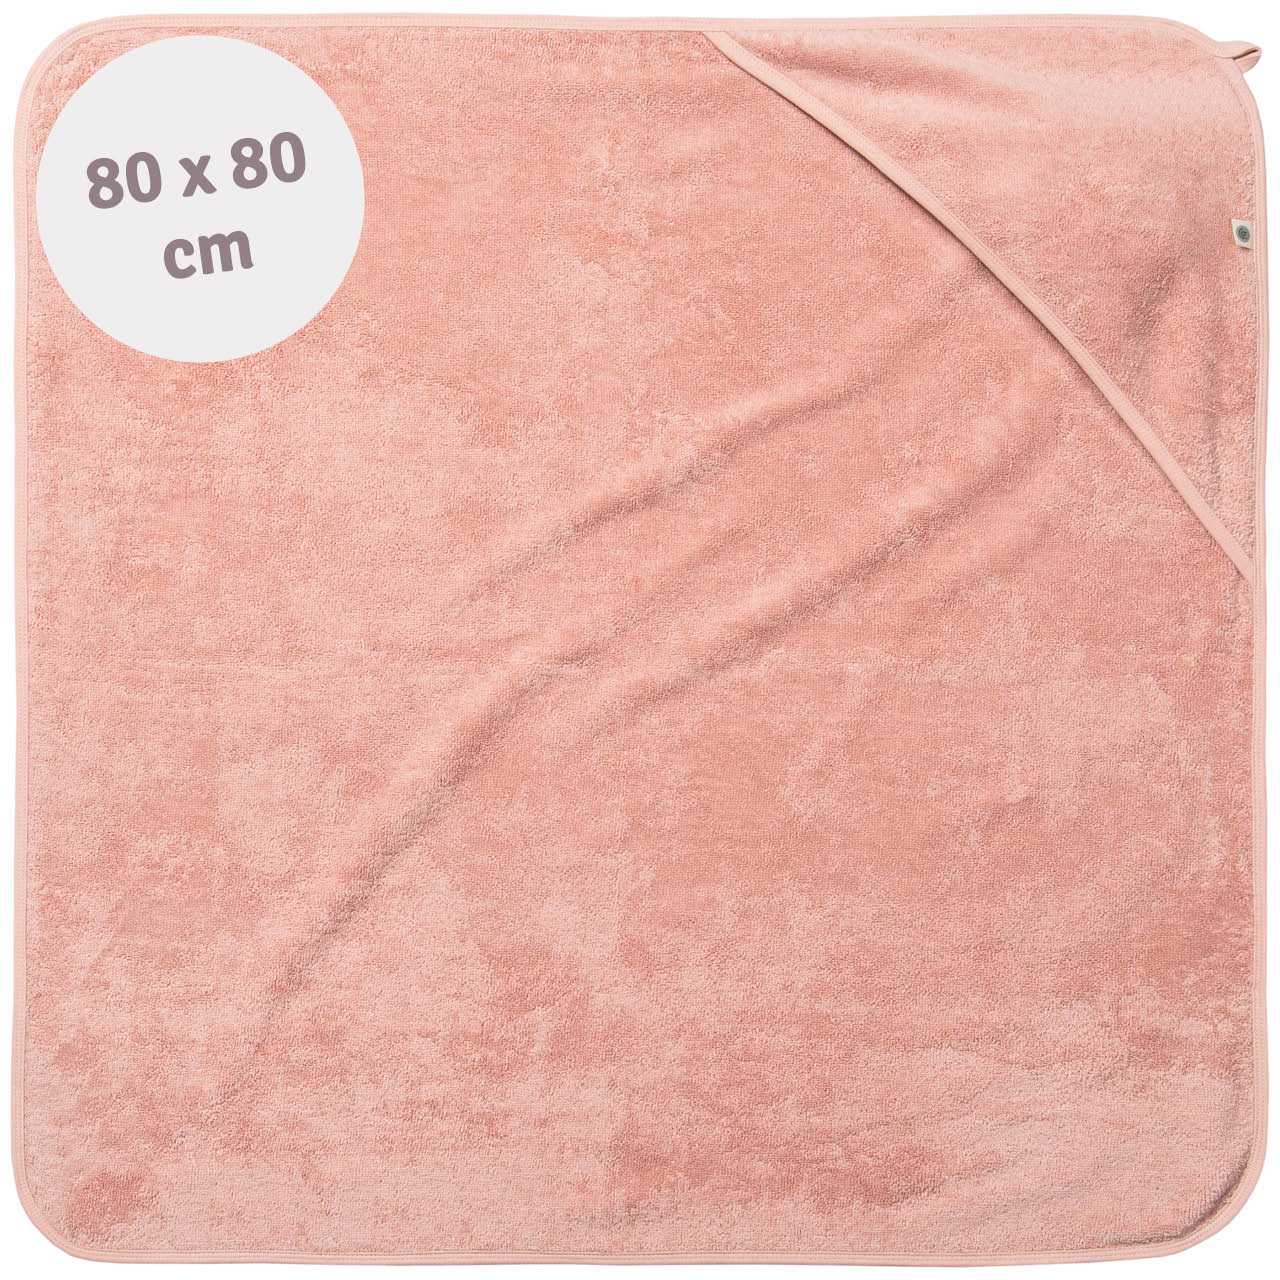 Kapuzenhandtuch Bio Baumwolle 80 x 80 cm rosa